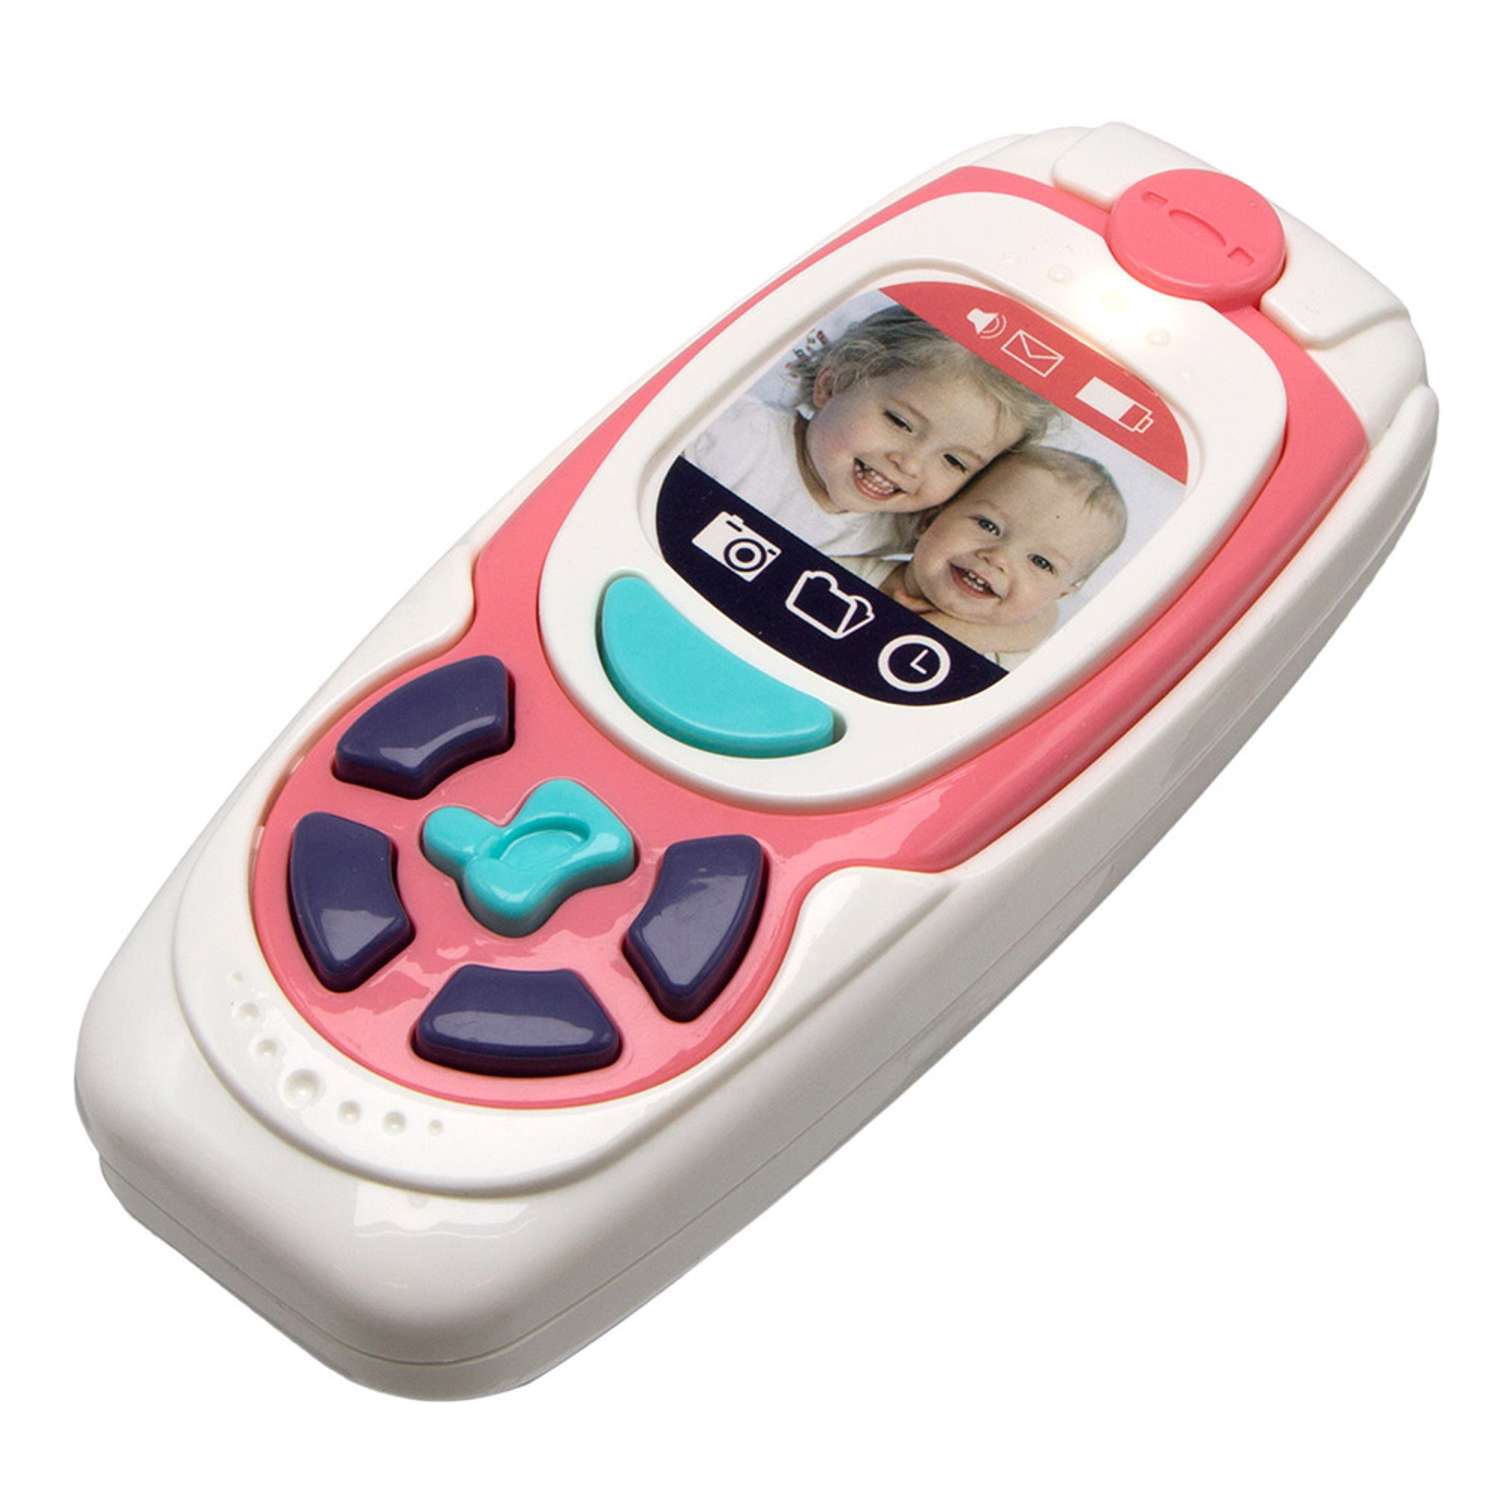 Развивающая игрушка S+S Телефон 100040 - фото 1